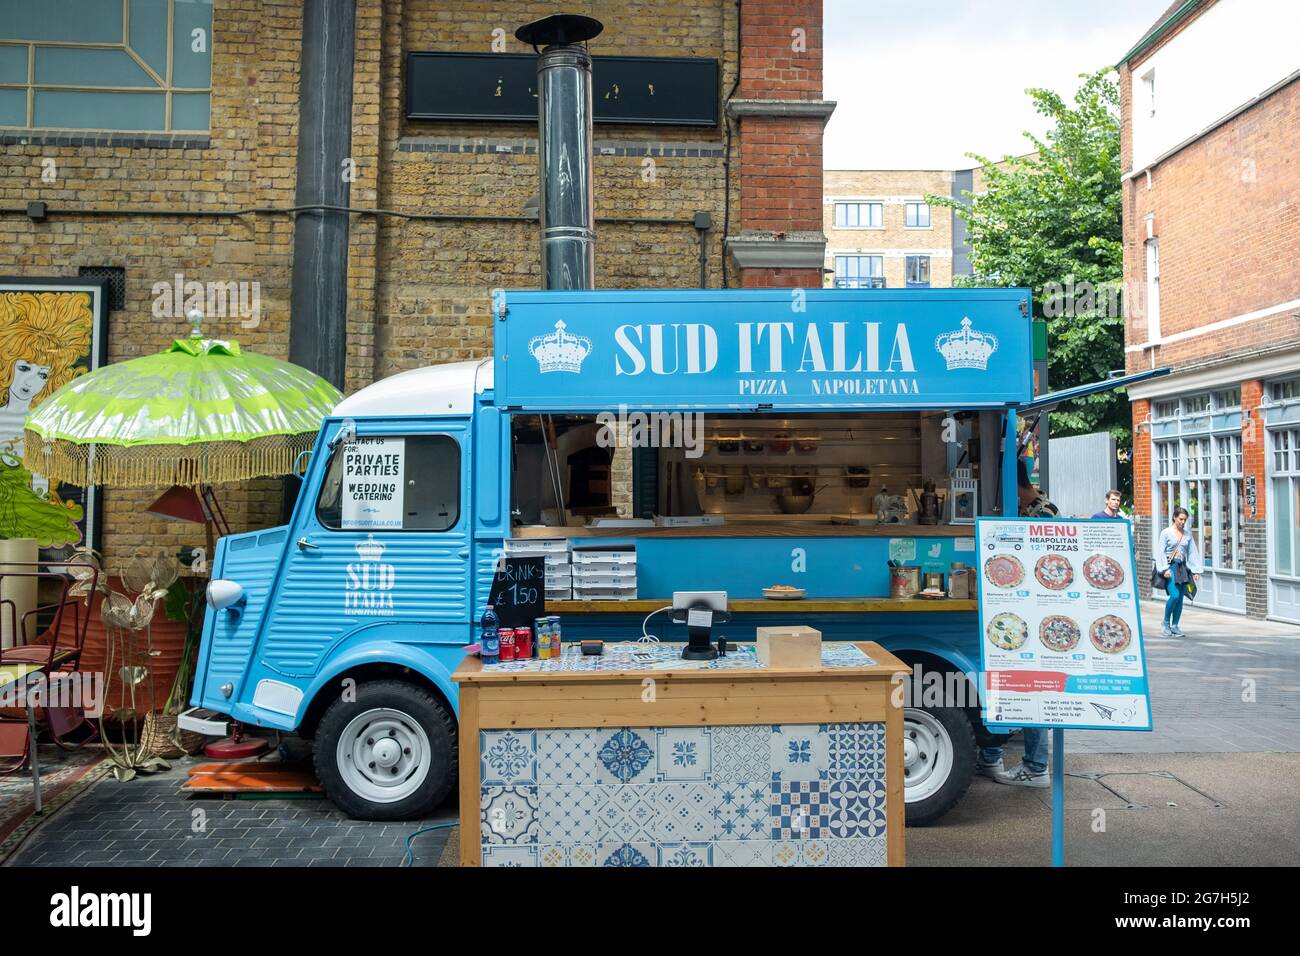 London- July, 2021: A pizza truck inside Spitalfields market in East London Stock Photo